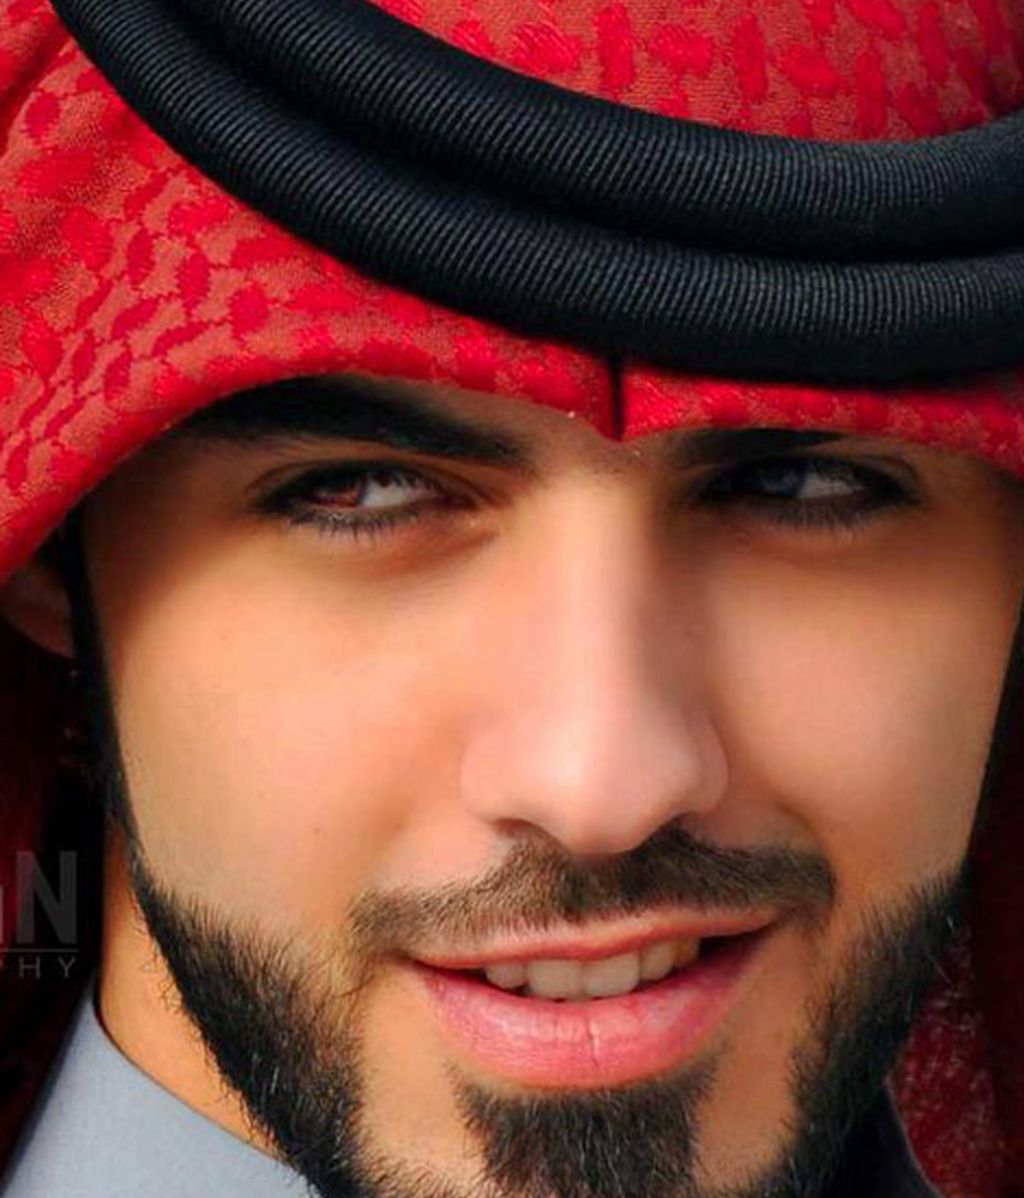 El hombre expulsado por guapo de Arabia Saudí, al descubierto